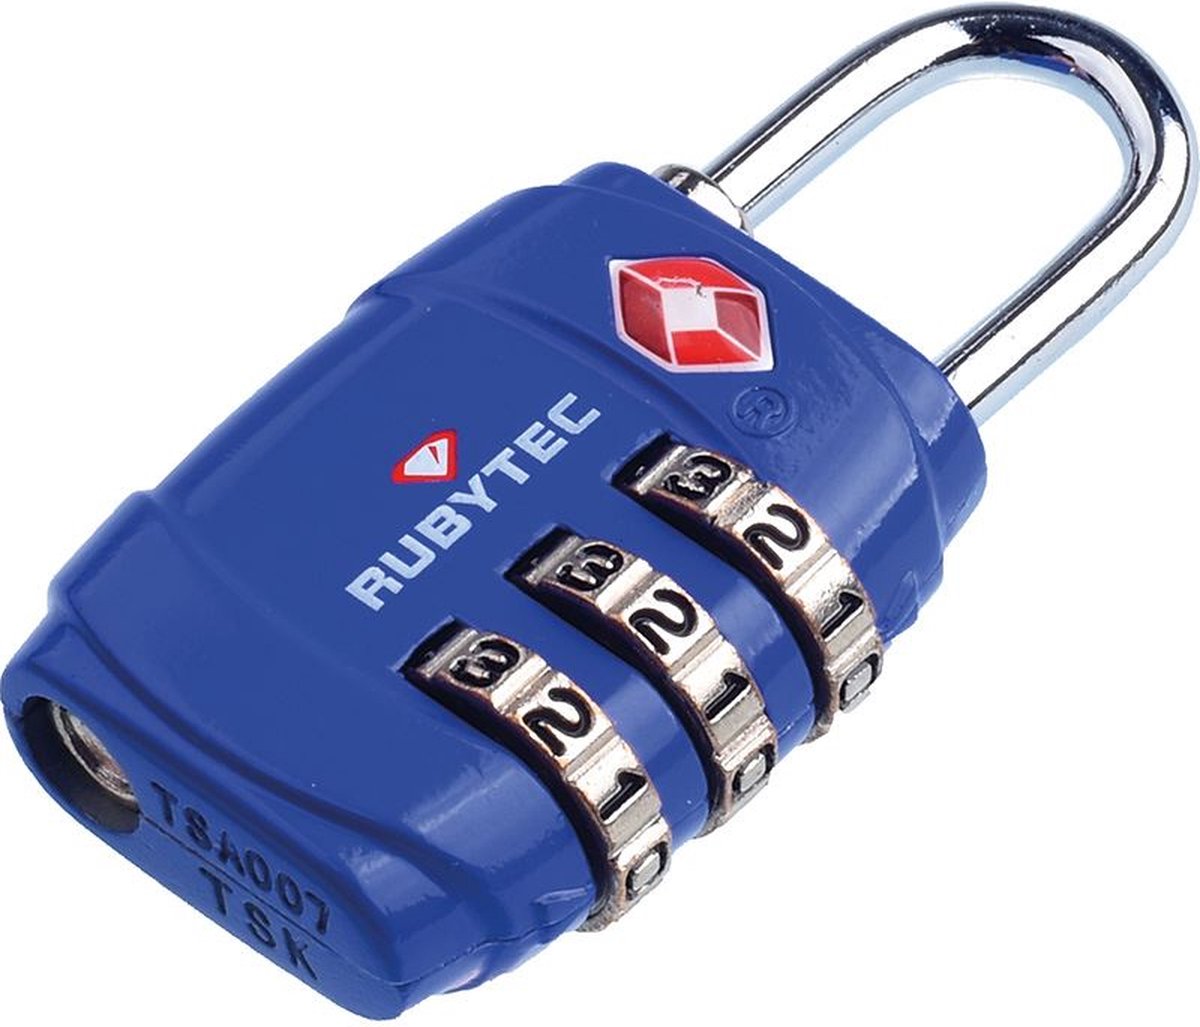 Rubytec Tsa 3 Dial Luggage Lock